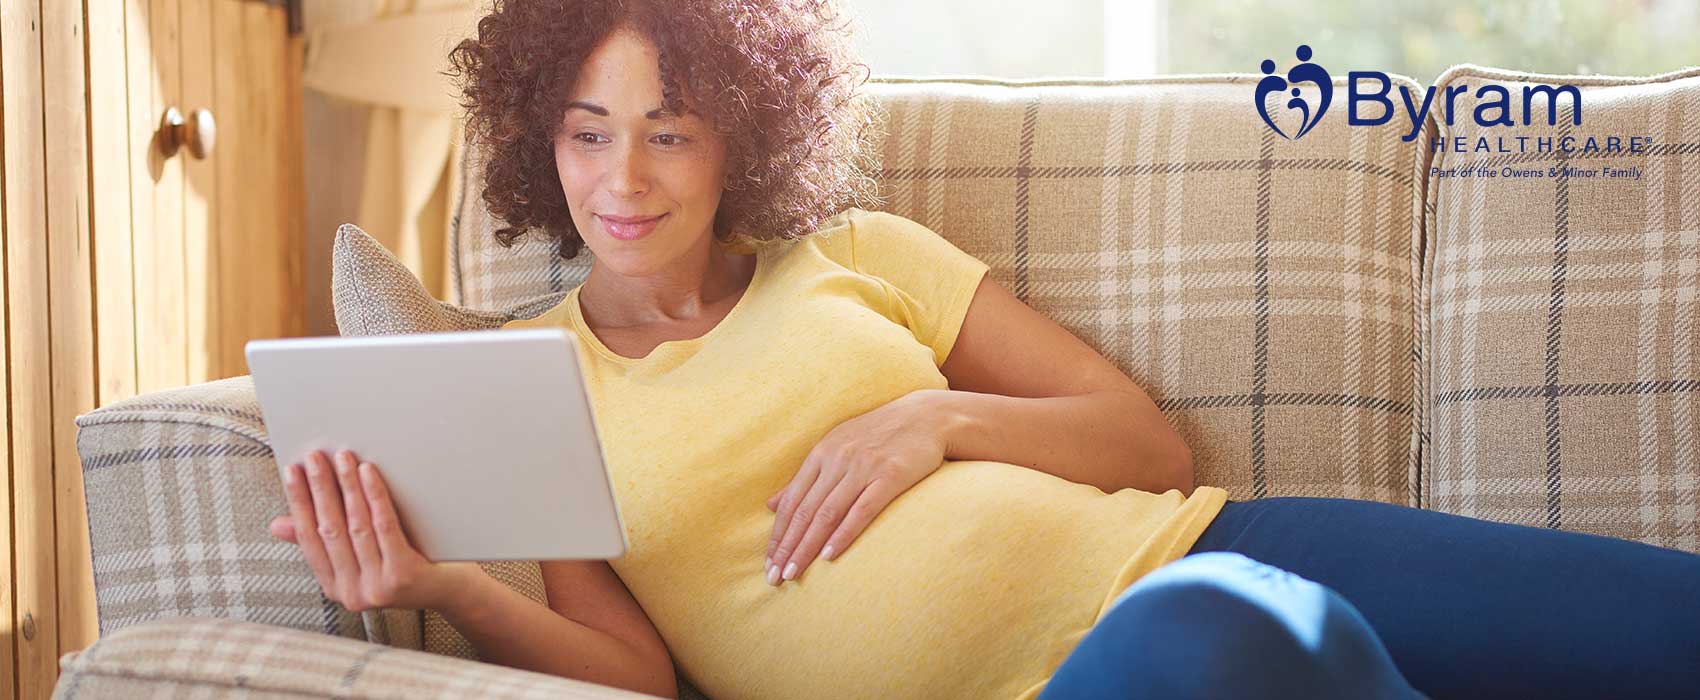 Mujer embarazada mirando extractores de leche en línea.